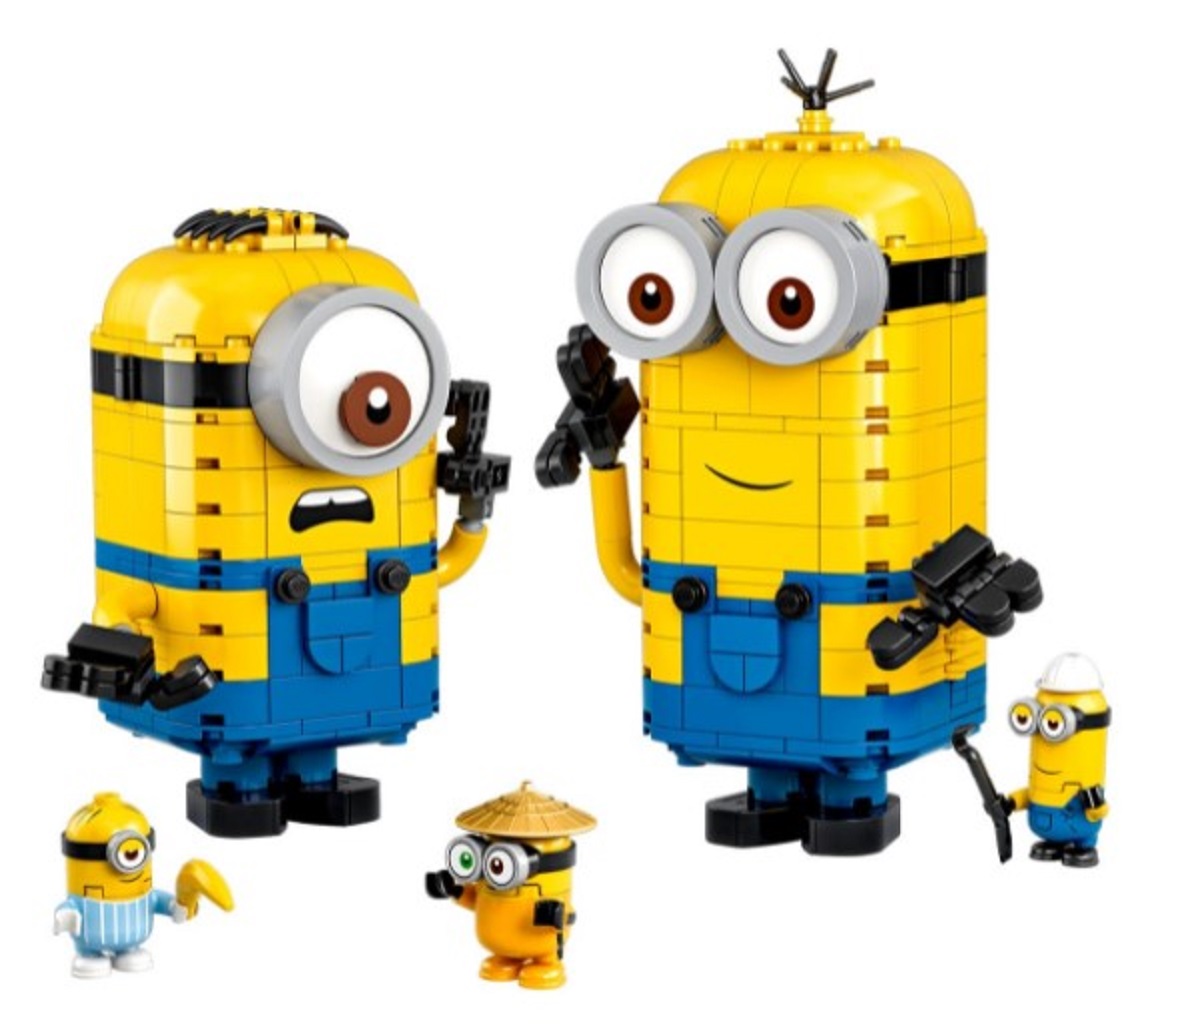 Lego Minions. Figurine minioni din caramizi